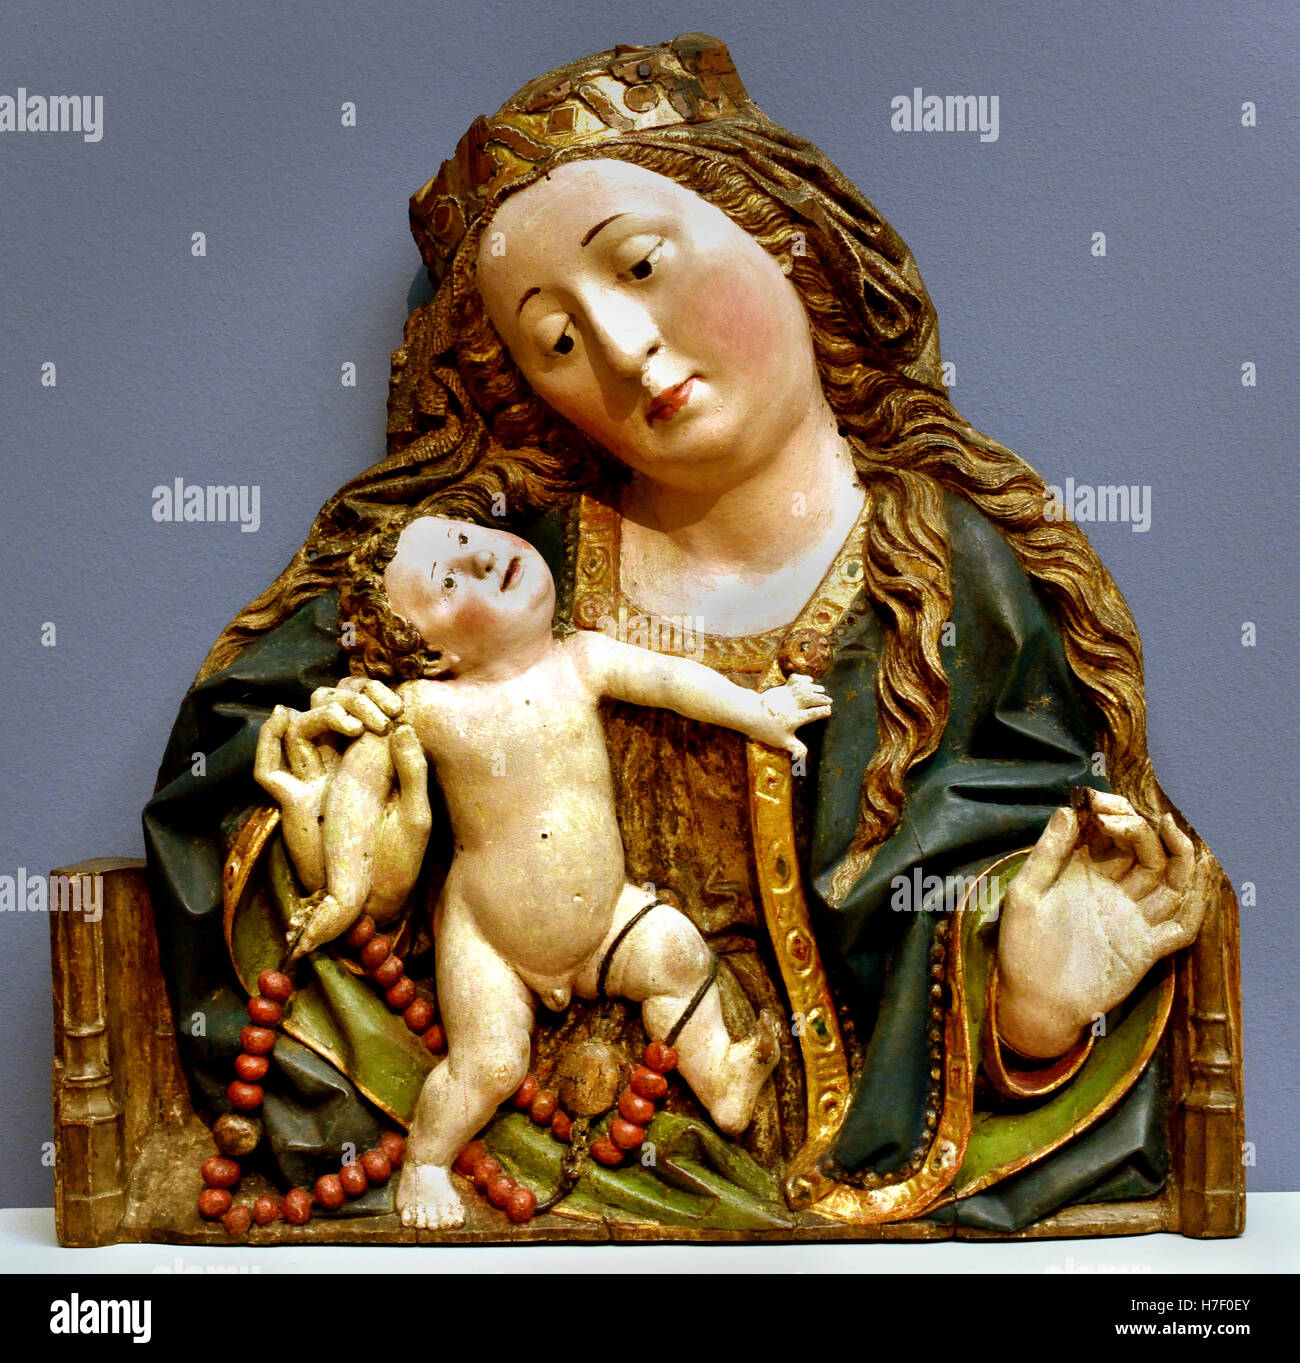 Vierge à l'enfant sculpture1480 Moyen-Âge Oberrhein - Rhin supérieur allemand Allemagne Banque D'Images